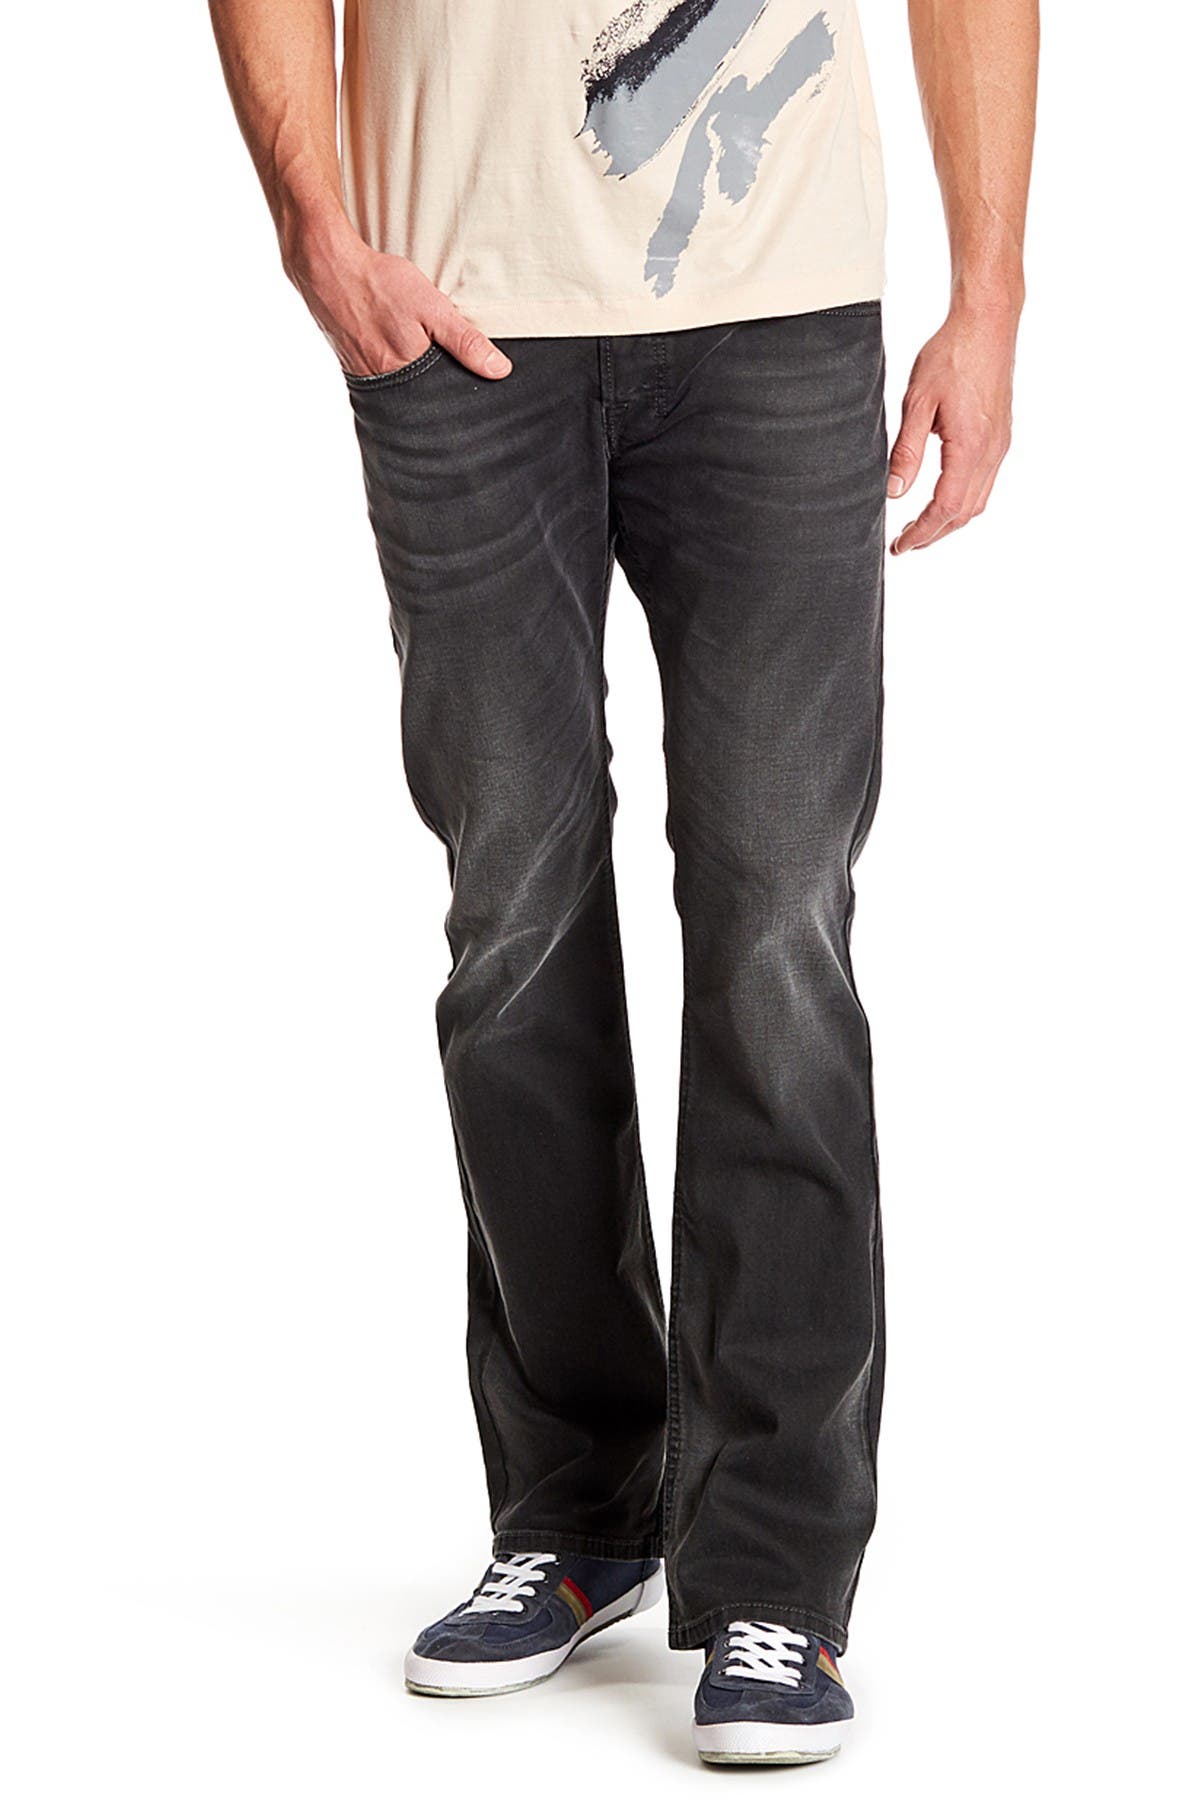 diesel zatiny bootcut jeans sale